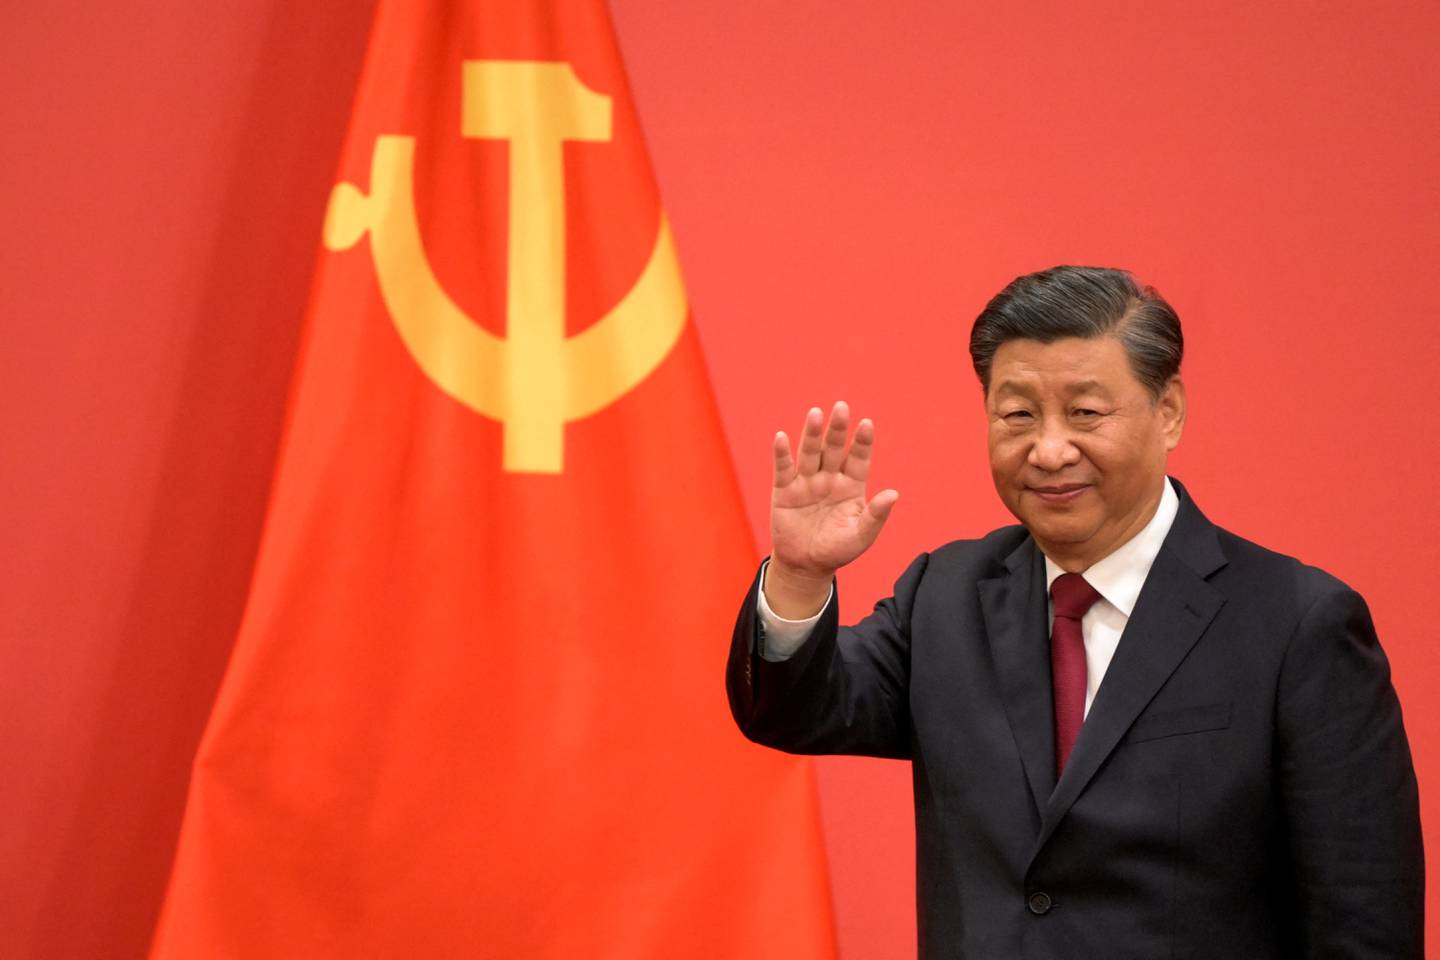 Xi Jinping asumió un tercer mandato como presidente chino este viernes 10 de marzo de 2023, culminando un ascenso que lo ha convertido en el líder más poderoso del país en generaciones. China refuerza sus lazos diplomáticos con Nicaragua.